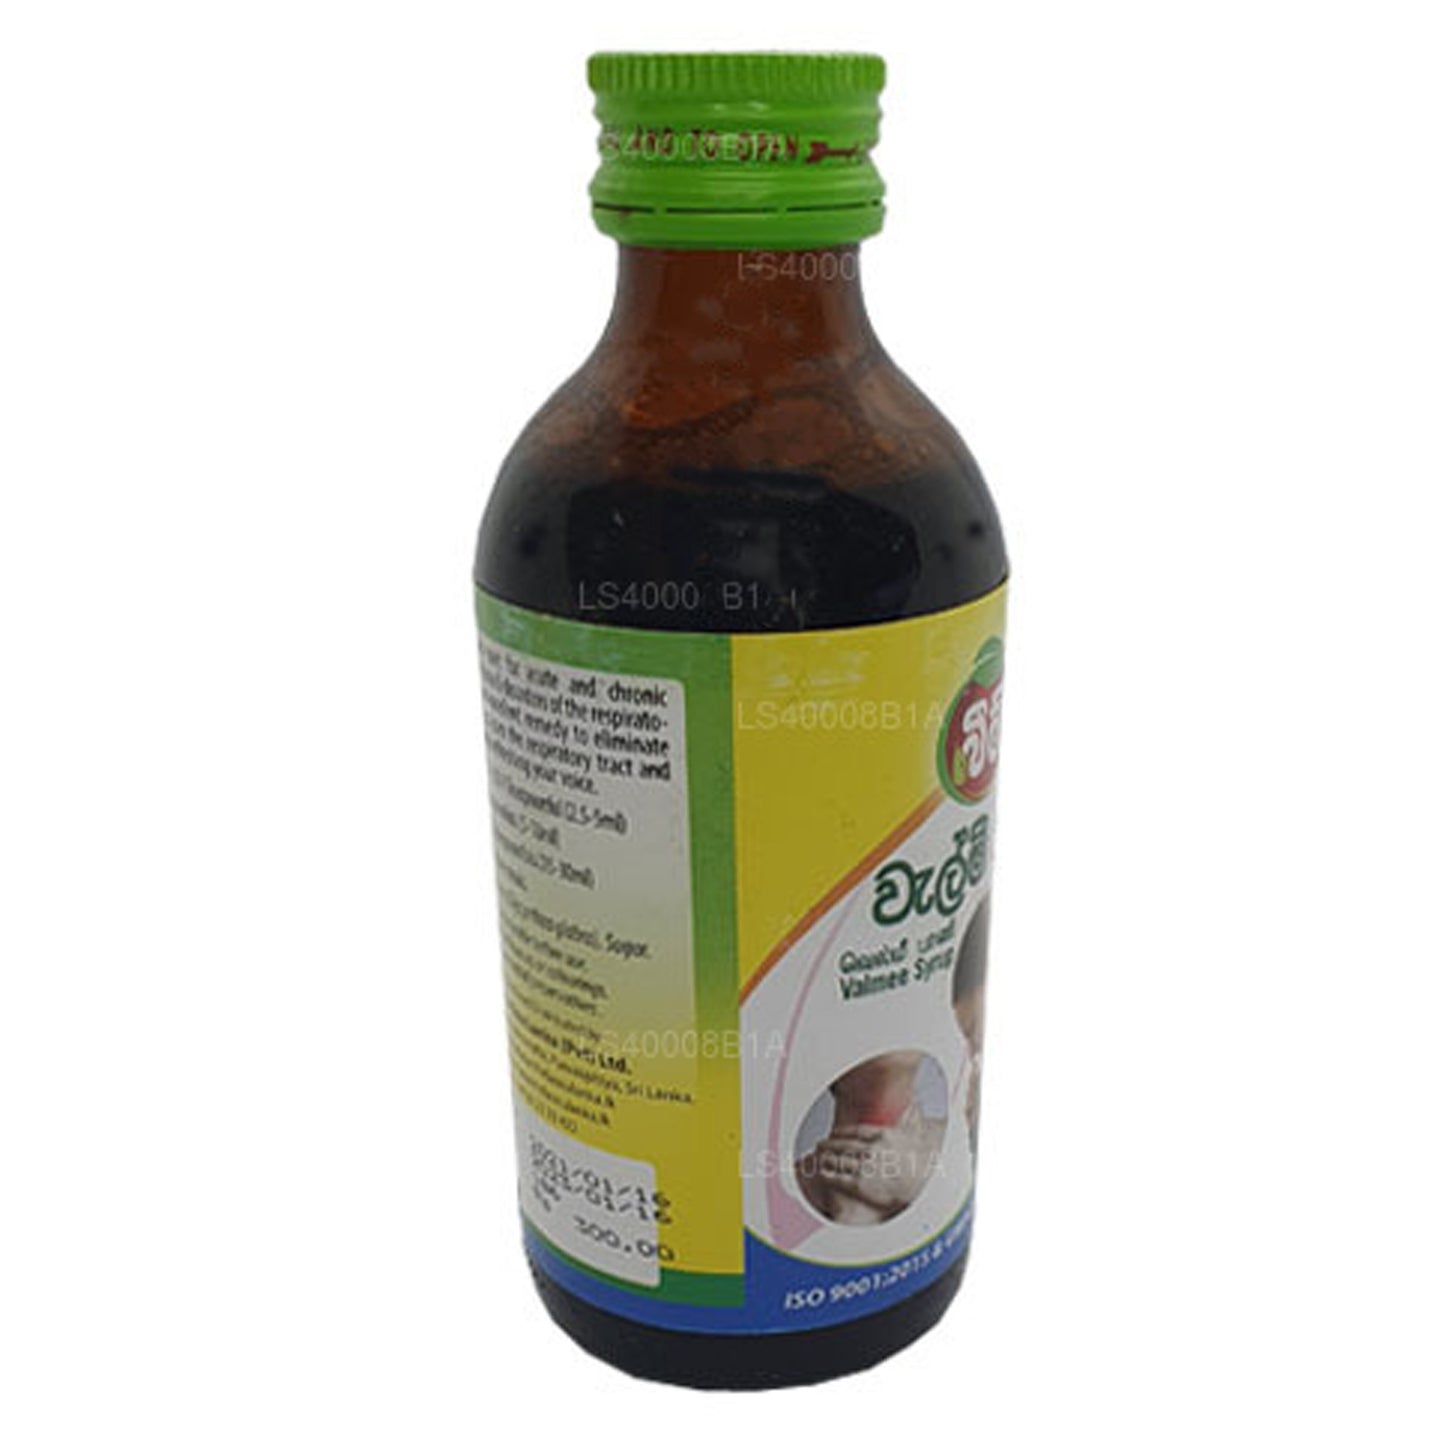 Beam Velmee Siroop (Athimadura-siroop) (180 ml)